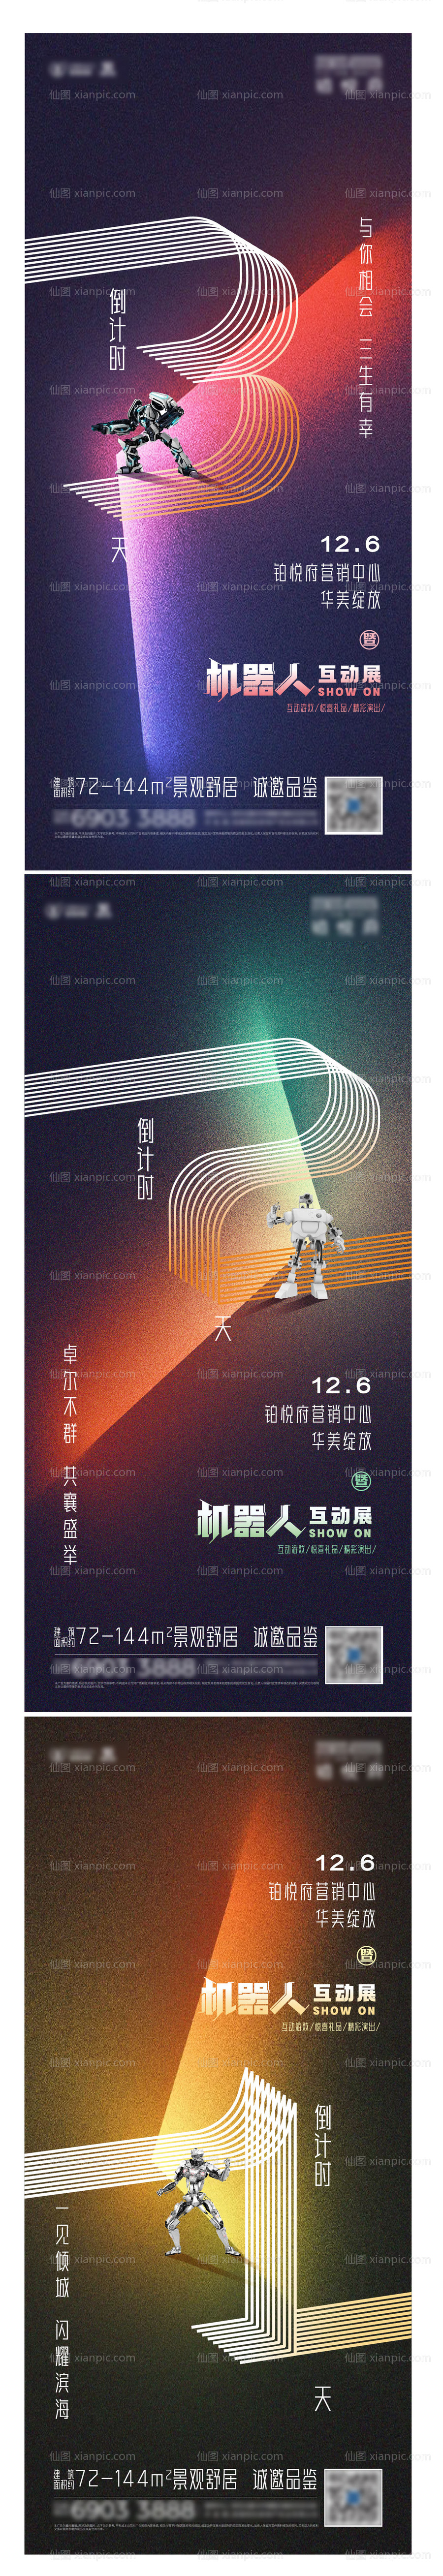 素材乐-地产机器人互动展倒计时海报系列